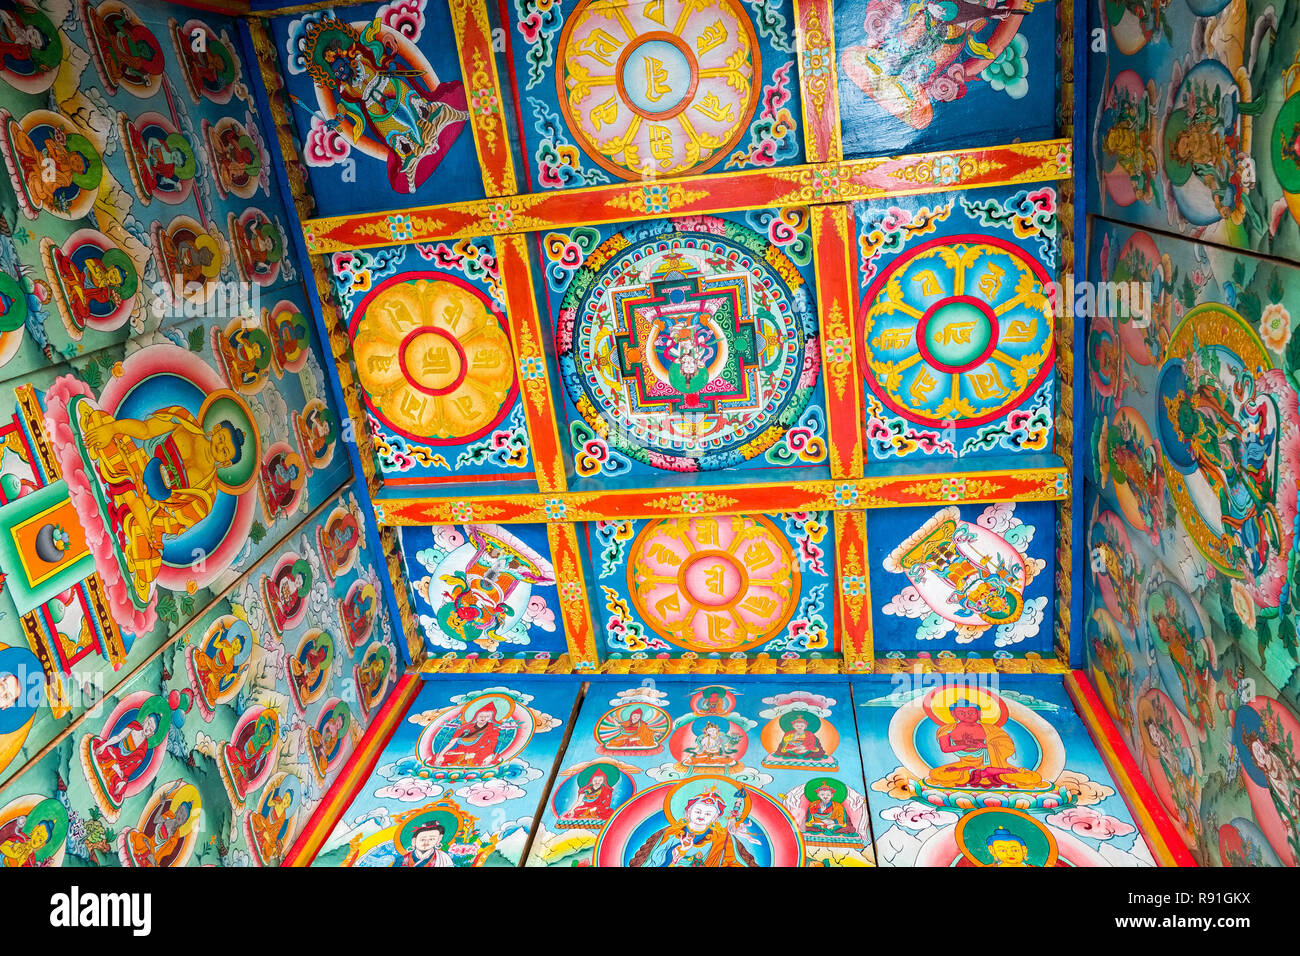 Sehr dekorative Malereien von Mandalas in einem Tibetischen Kani (Dorf Eingang Arch), Nepal Stockfoto